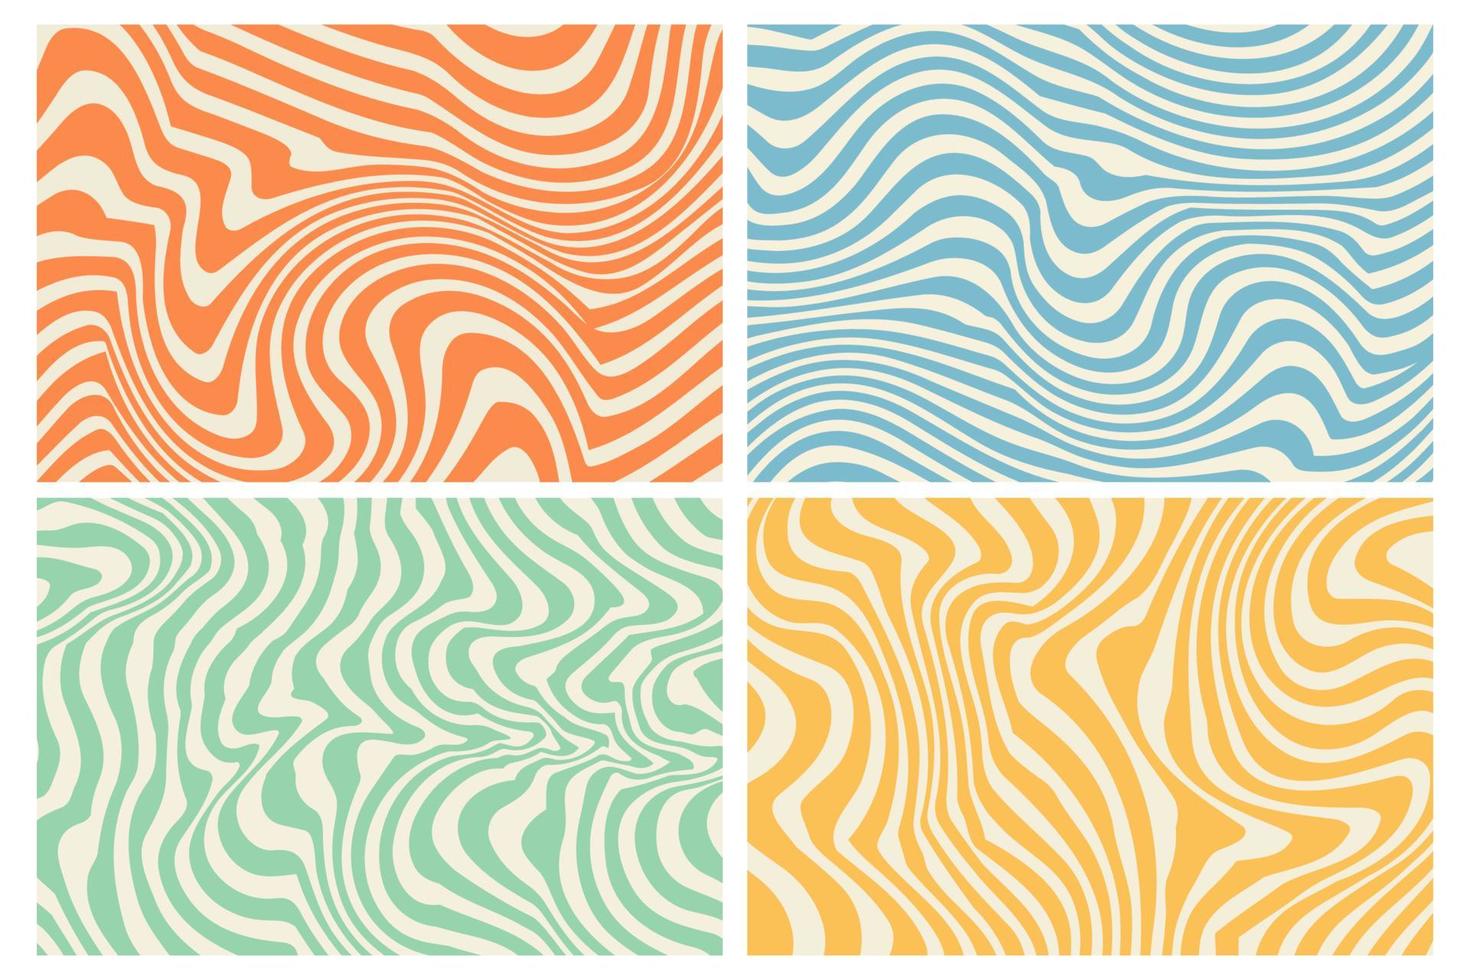 fundos de hippie groovy dos anos 70 com padrão de redemoinho de ondas vetor